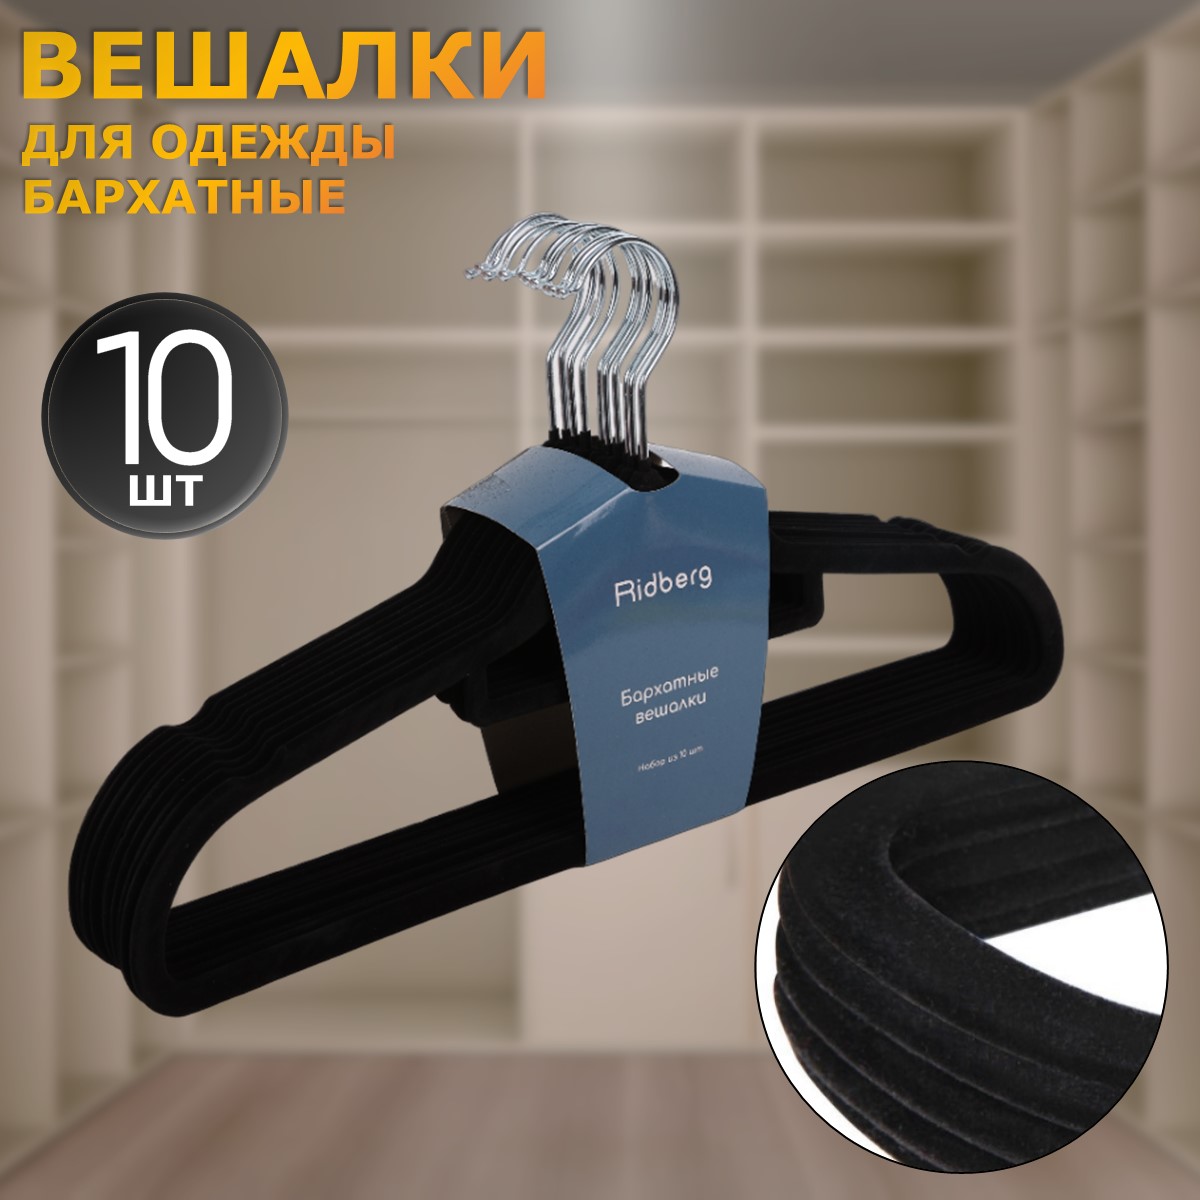 Вешалки-плечики для одежды Ridberg бархатные, набор 10 шт - купить в iCover Пушкино (со склада СберМегаМаркет), цена на Мегамаркет